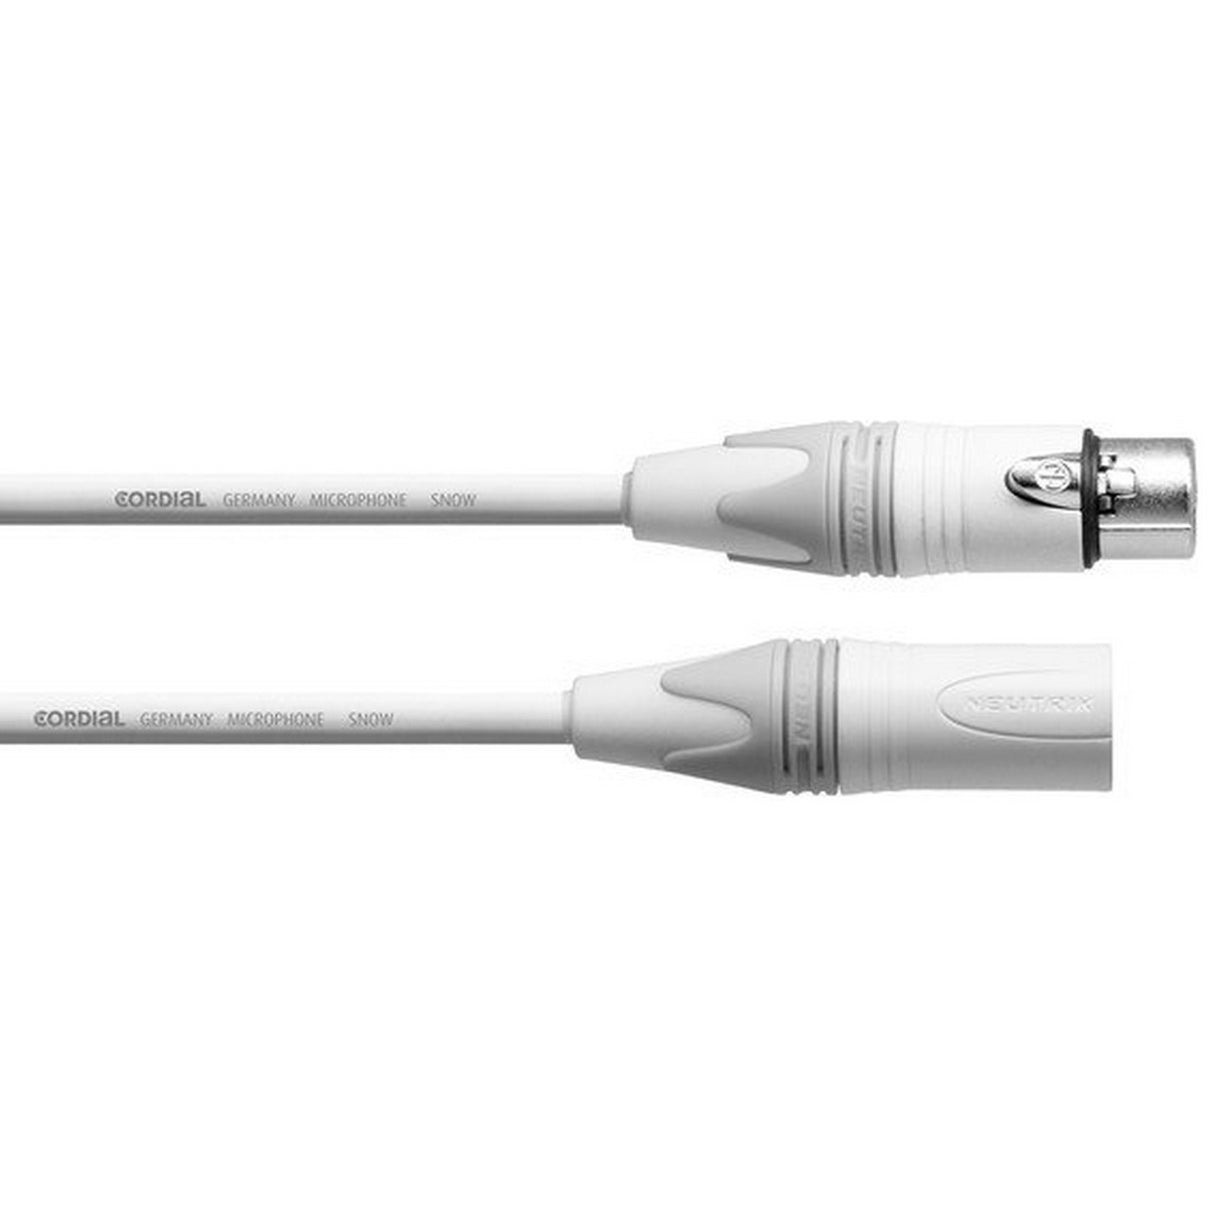 Cordial CXM 5 FM-SNOW 5-Meter Neutrik 3 Pin XLR Female to 3 Pin XLR Male Microphone Cable